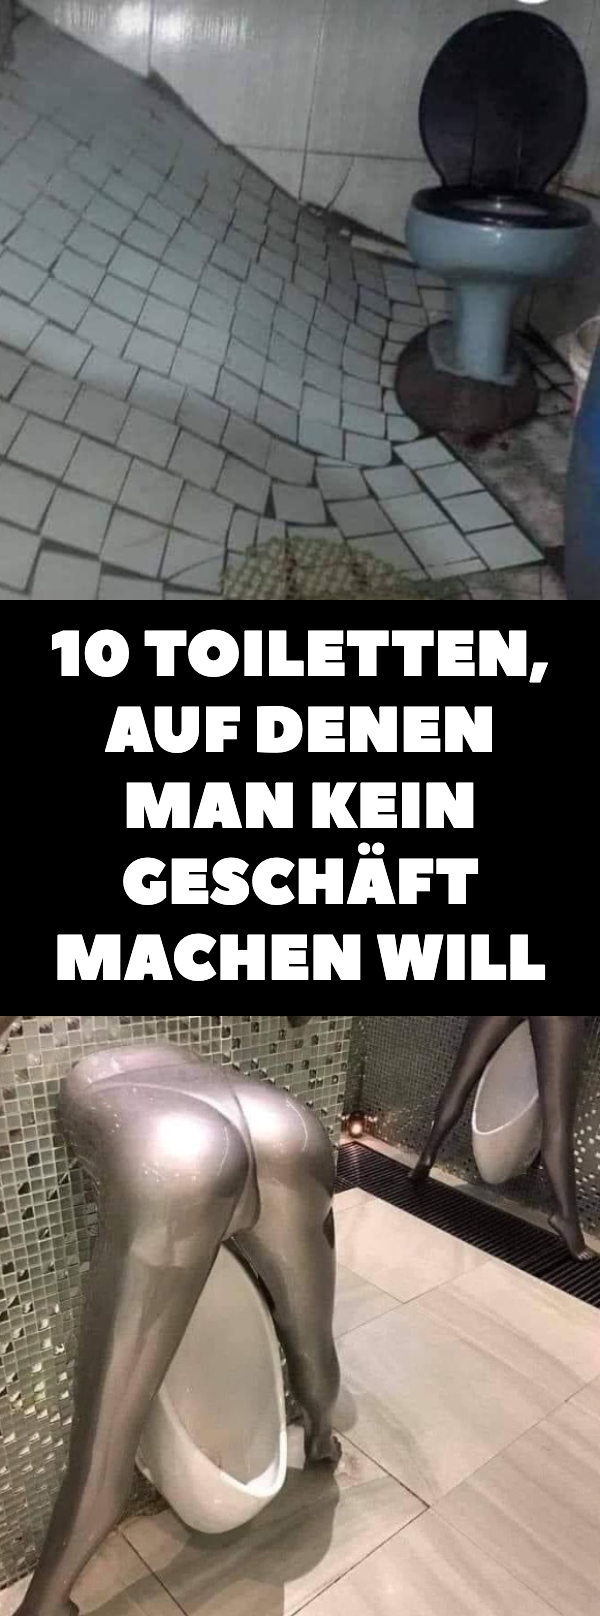 10 Toiletten, auf denen man kein Geschäft machen will